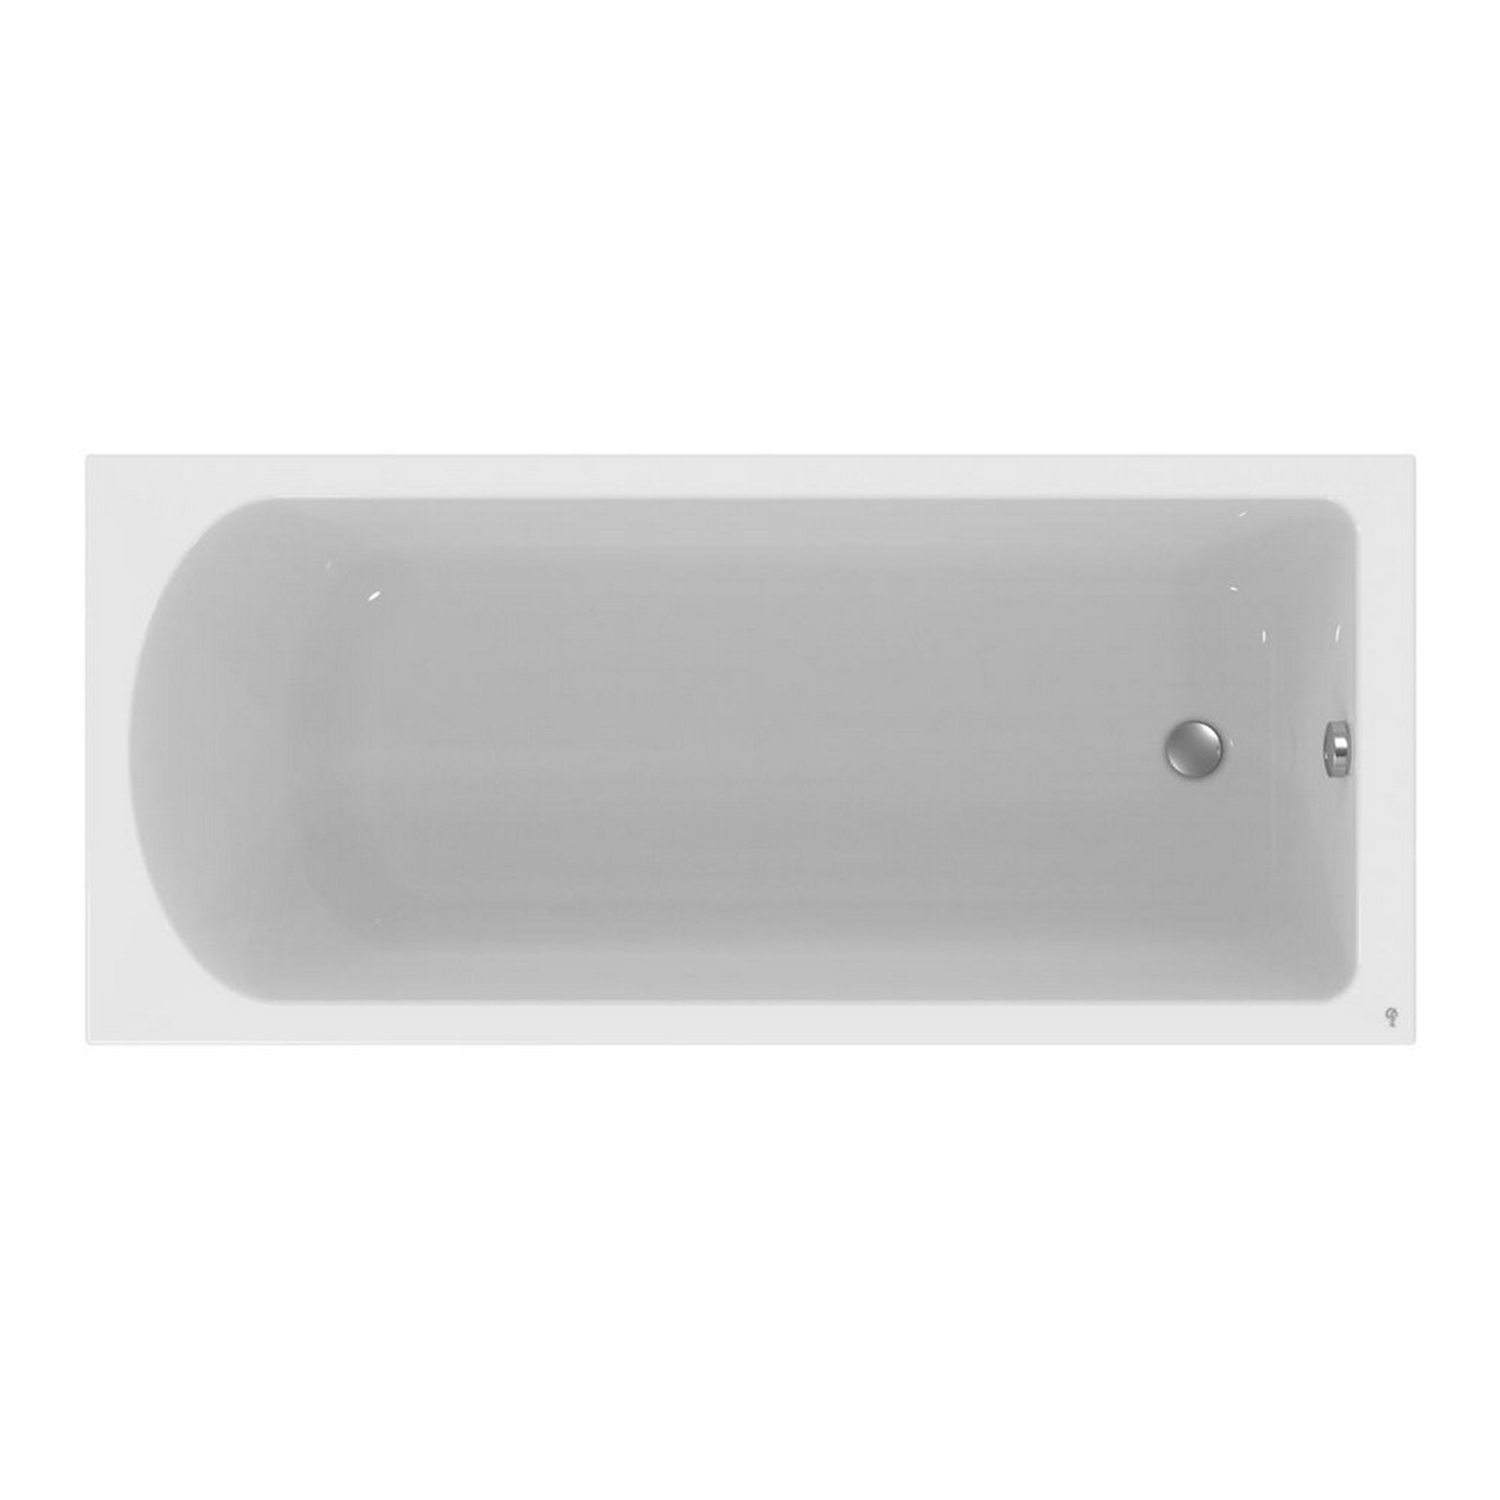 Акриловая ванна Ideal Standard Hotline 150х70 акриловая ванна ideal standard hotline 170x75 k274601